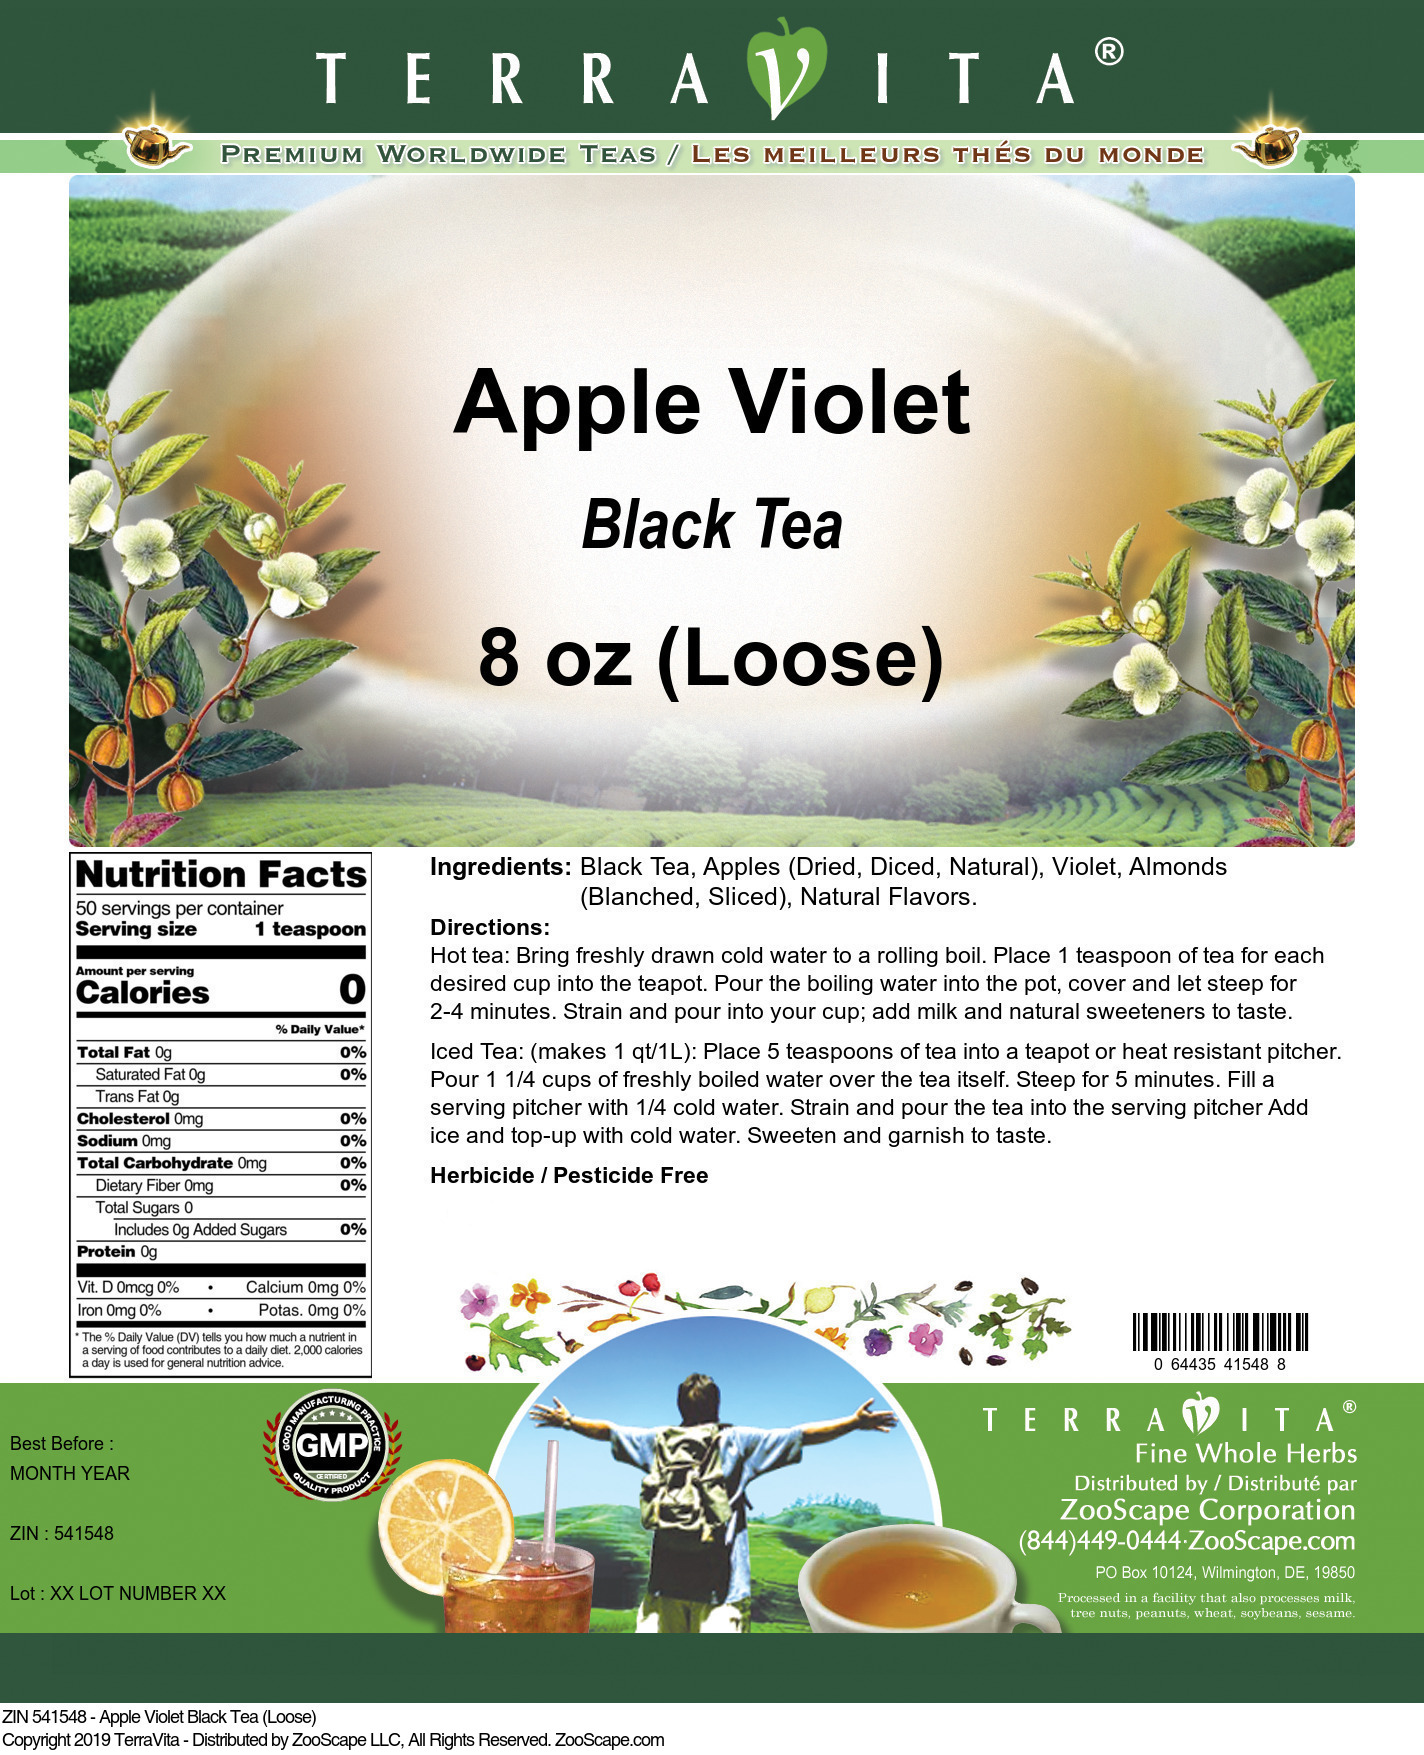 Apple Violet Black Tea (Loose) - Label